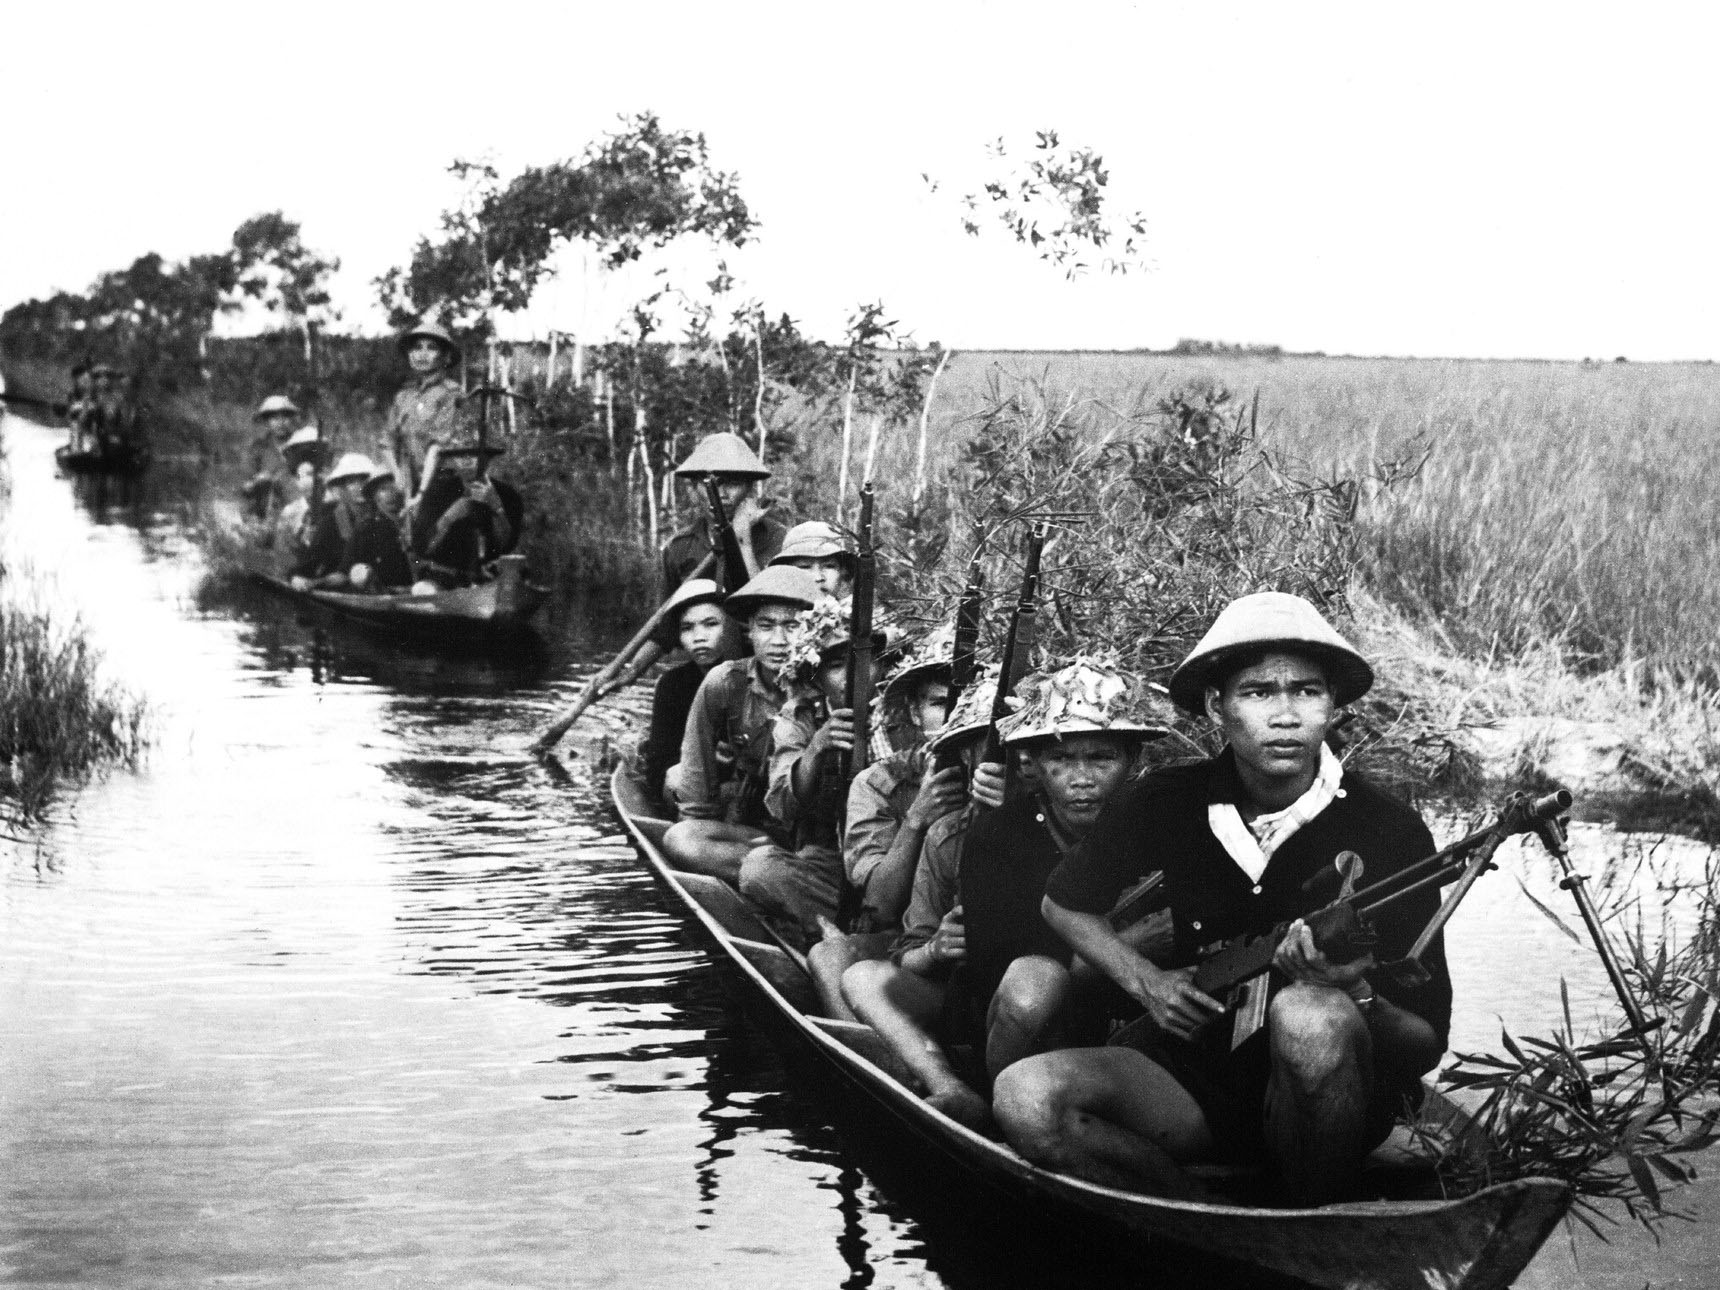 Forces de guérilla du Viêt-cong en provenance du Nord-Vietnam traversant une rivière en 1966 durant la guerre du Vietnam